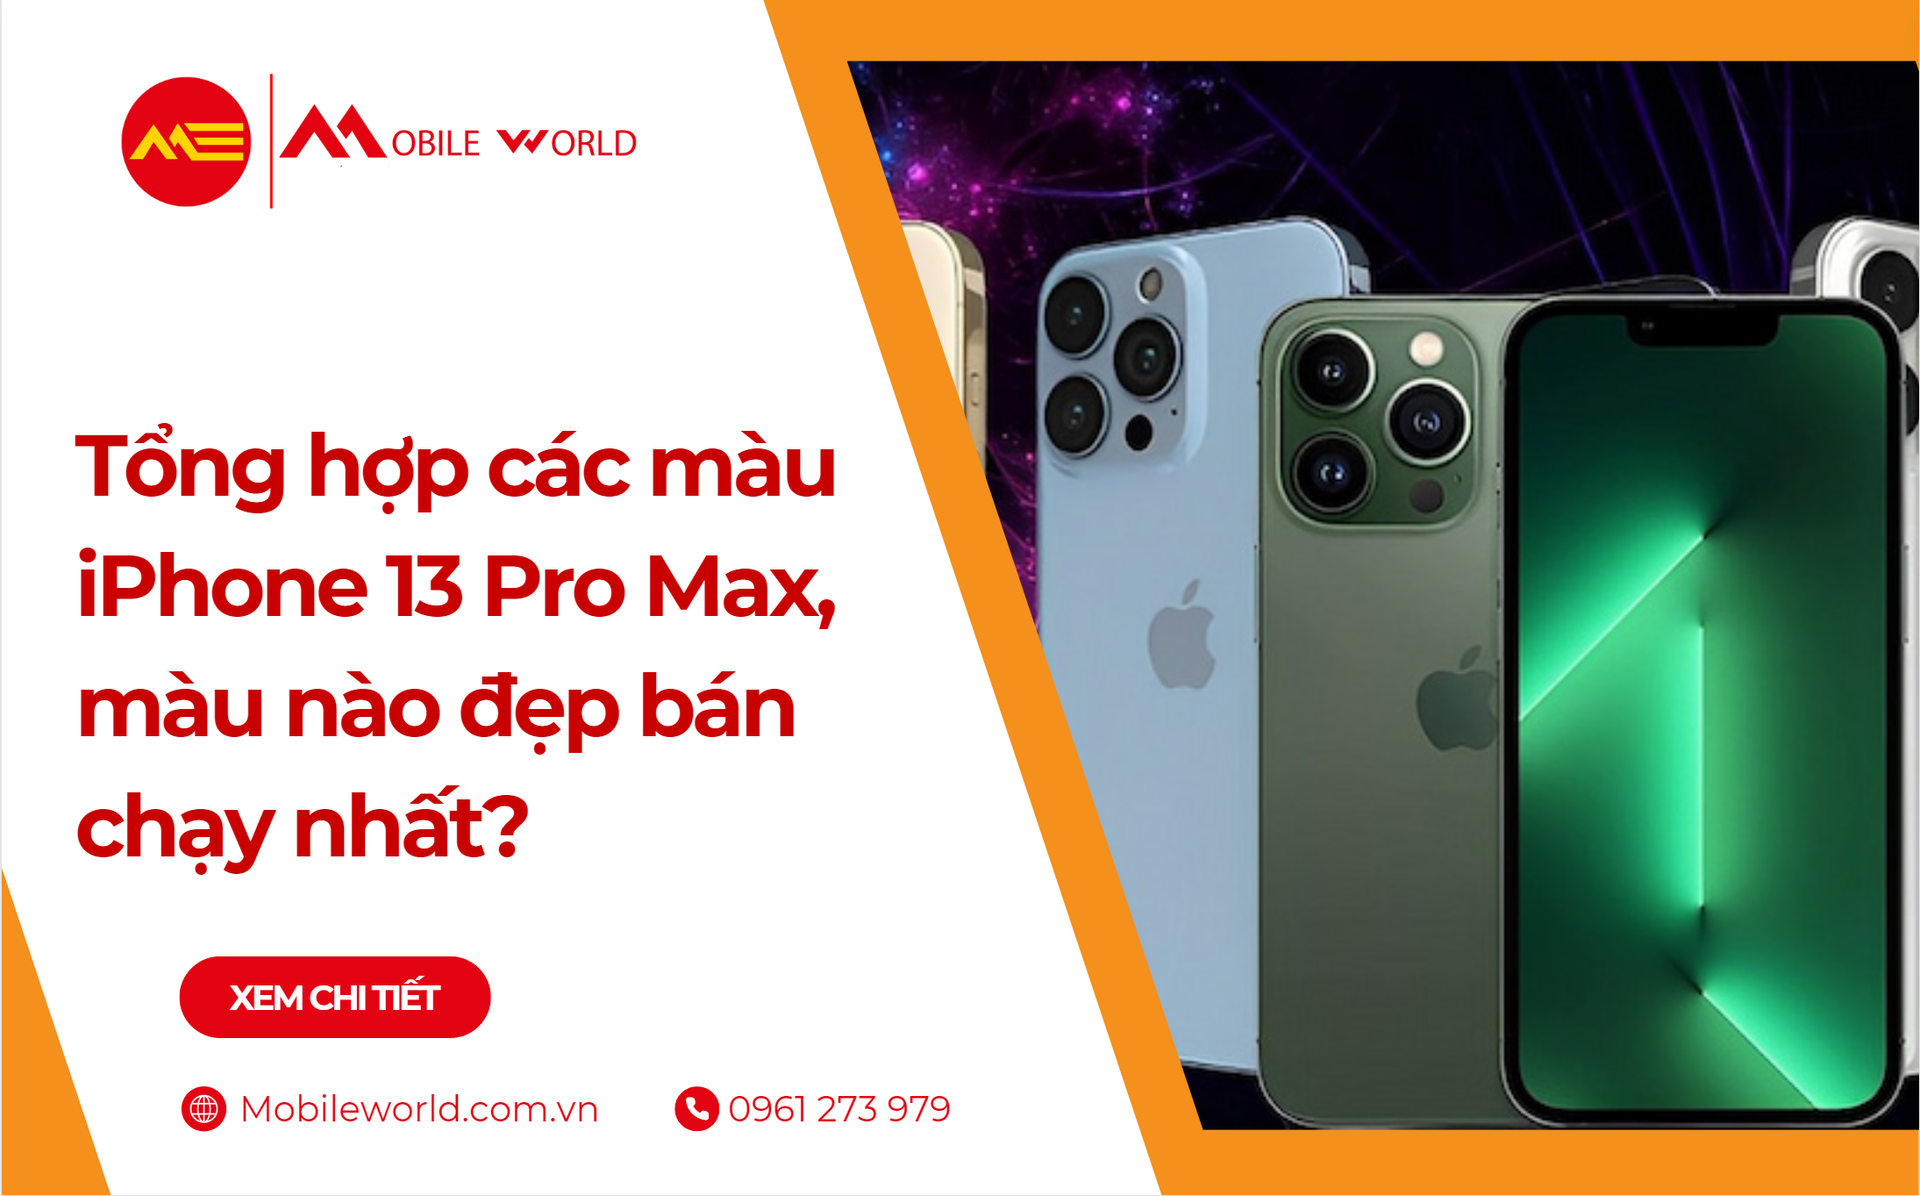 iphone-13-pro-max-co-may-mau-mau-nao-dep-ban-chay-nhat-1